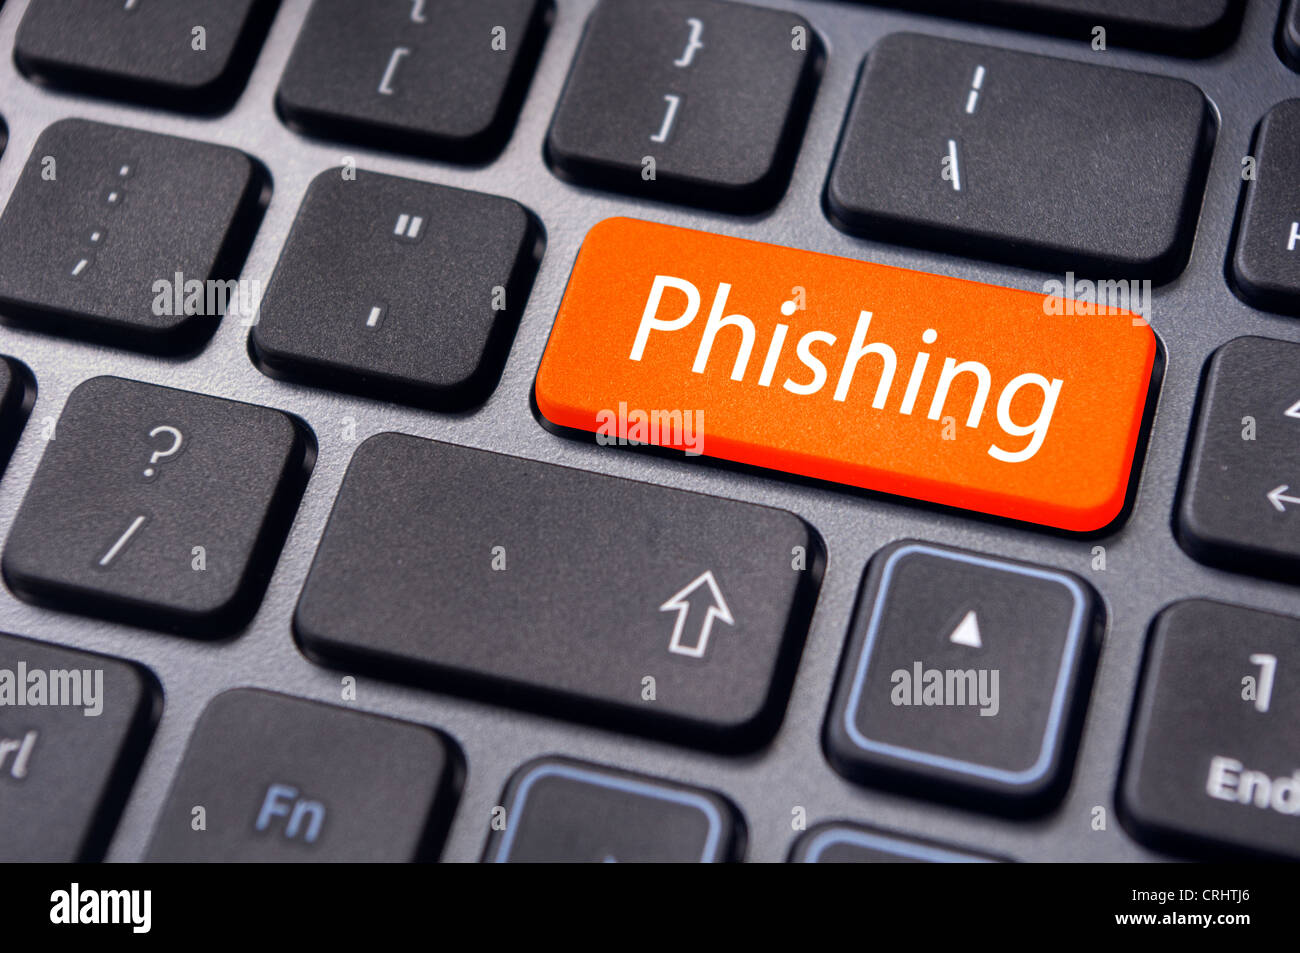 Phishing-Konzepte, Benutzernamen, Passwörter oder einige finanzielle Informationen von Internet-Nutzern zu stehlen. Stockfoto